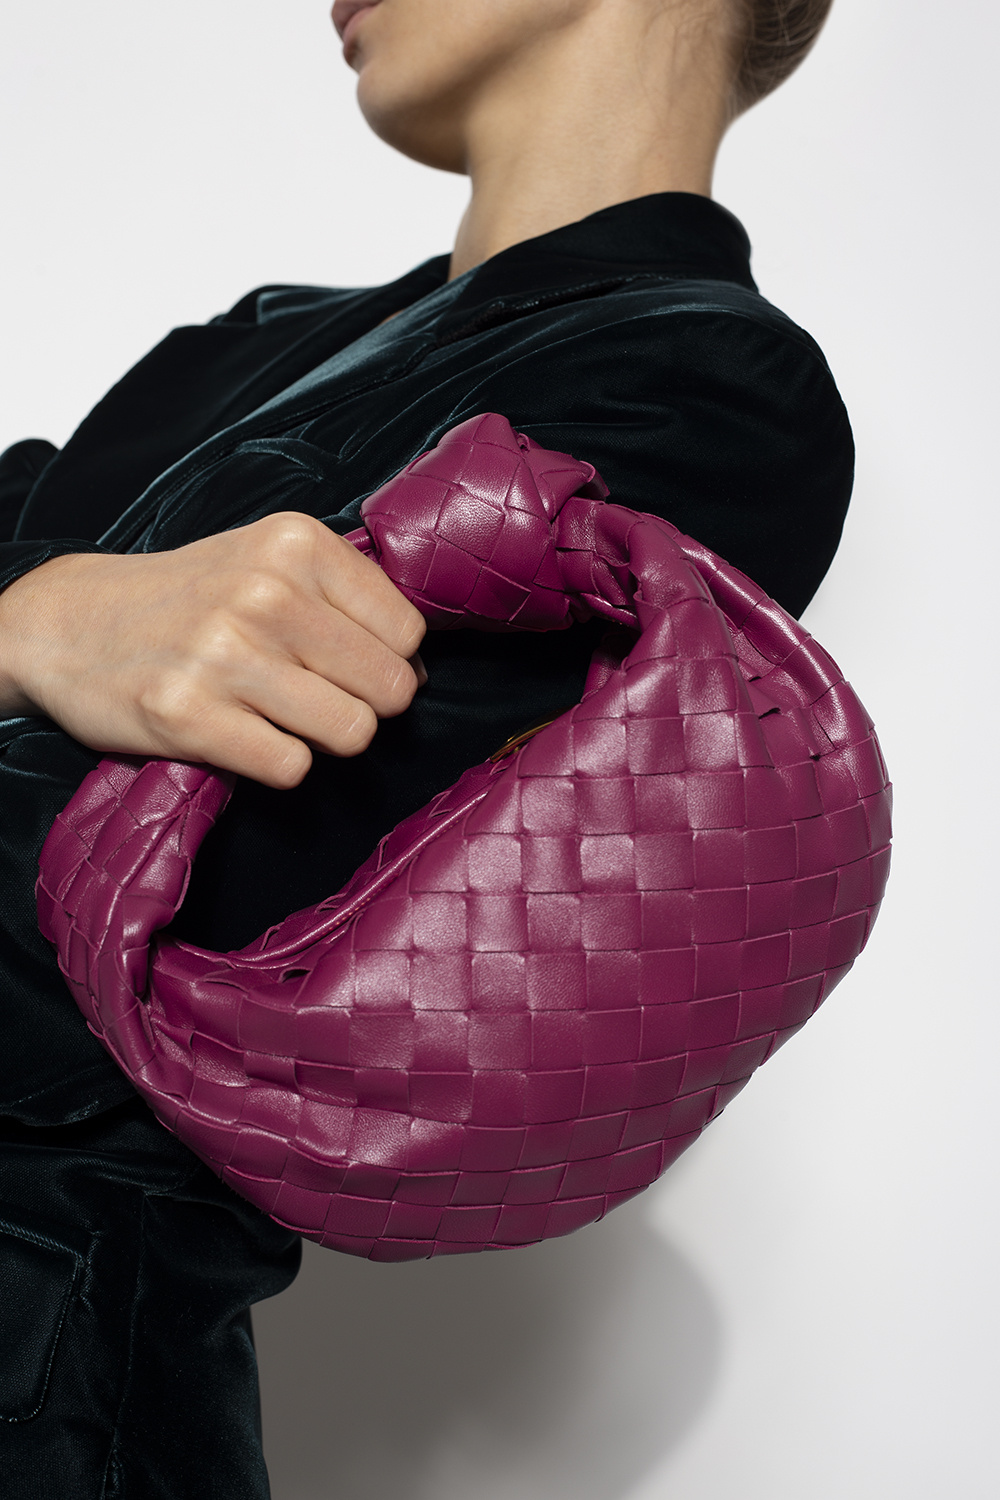 Jodie mini knotted crystal-embellished leather shoulder bag